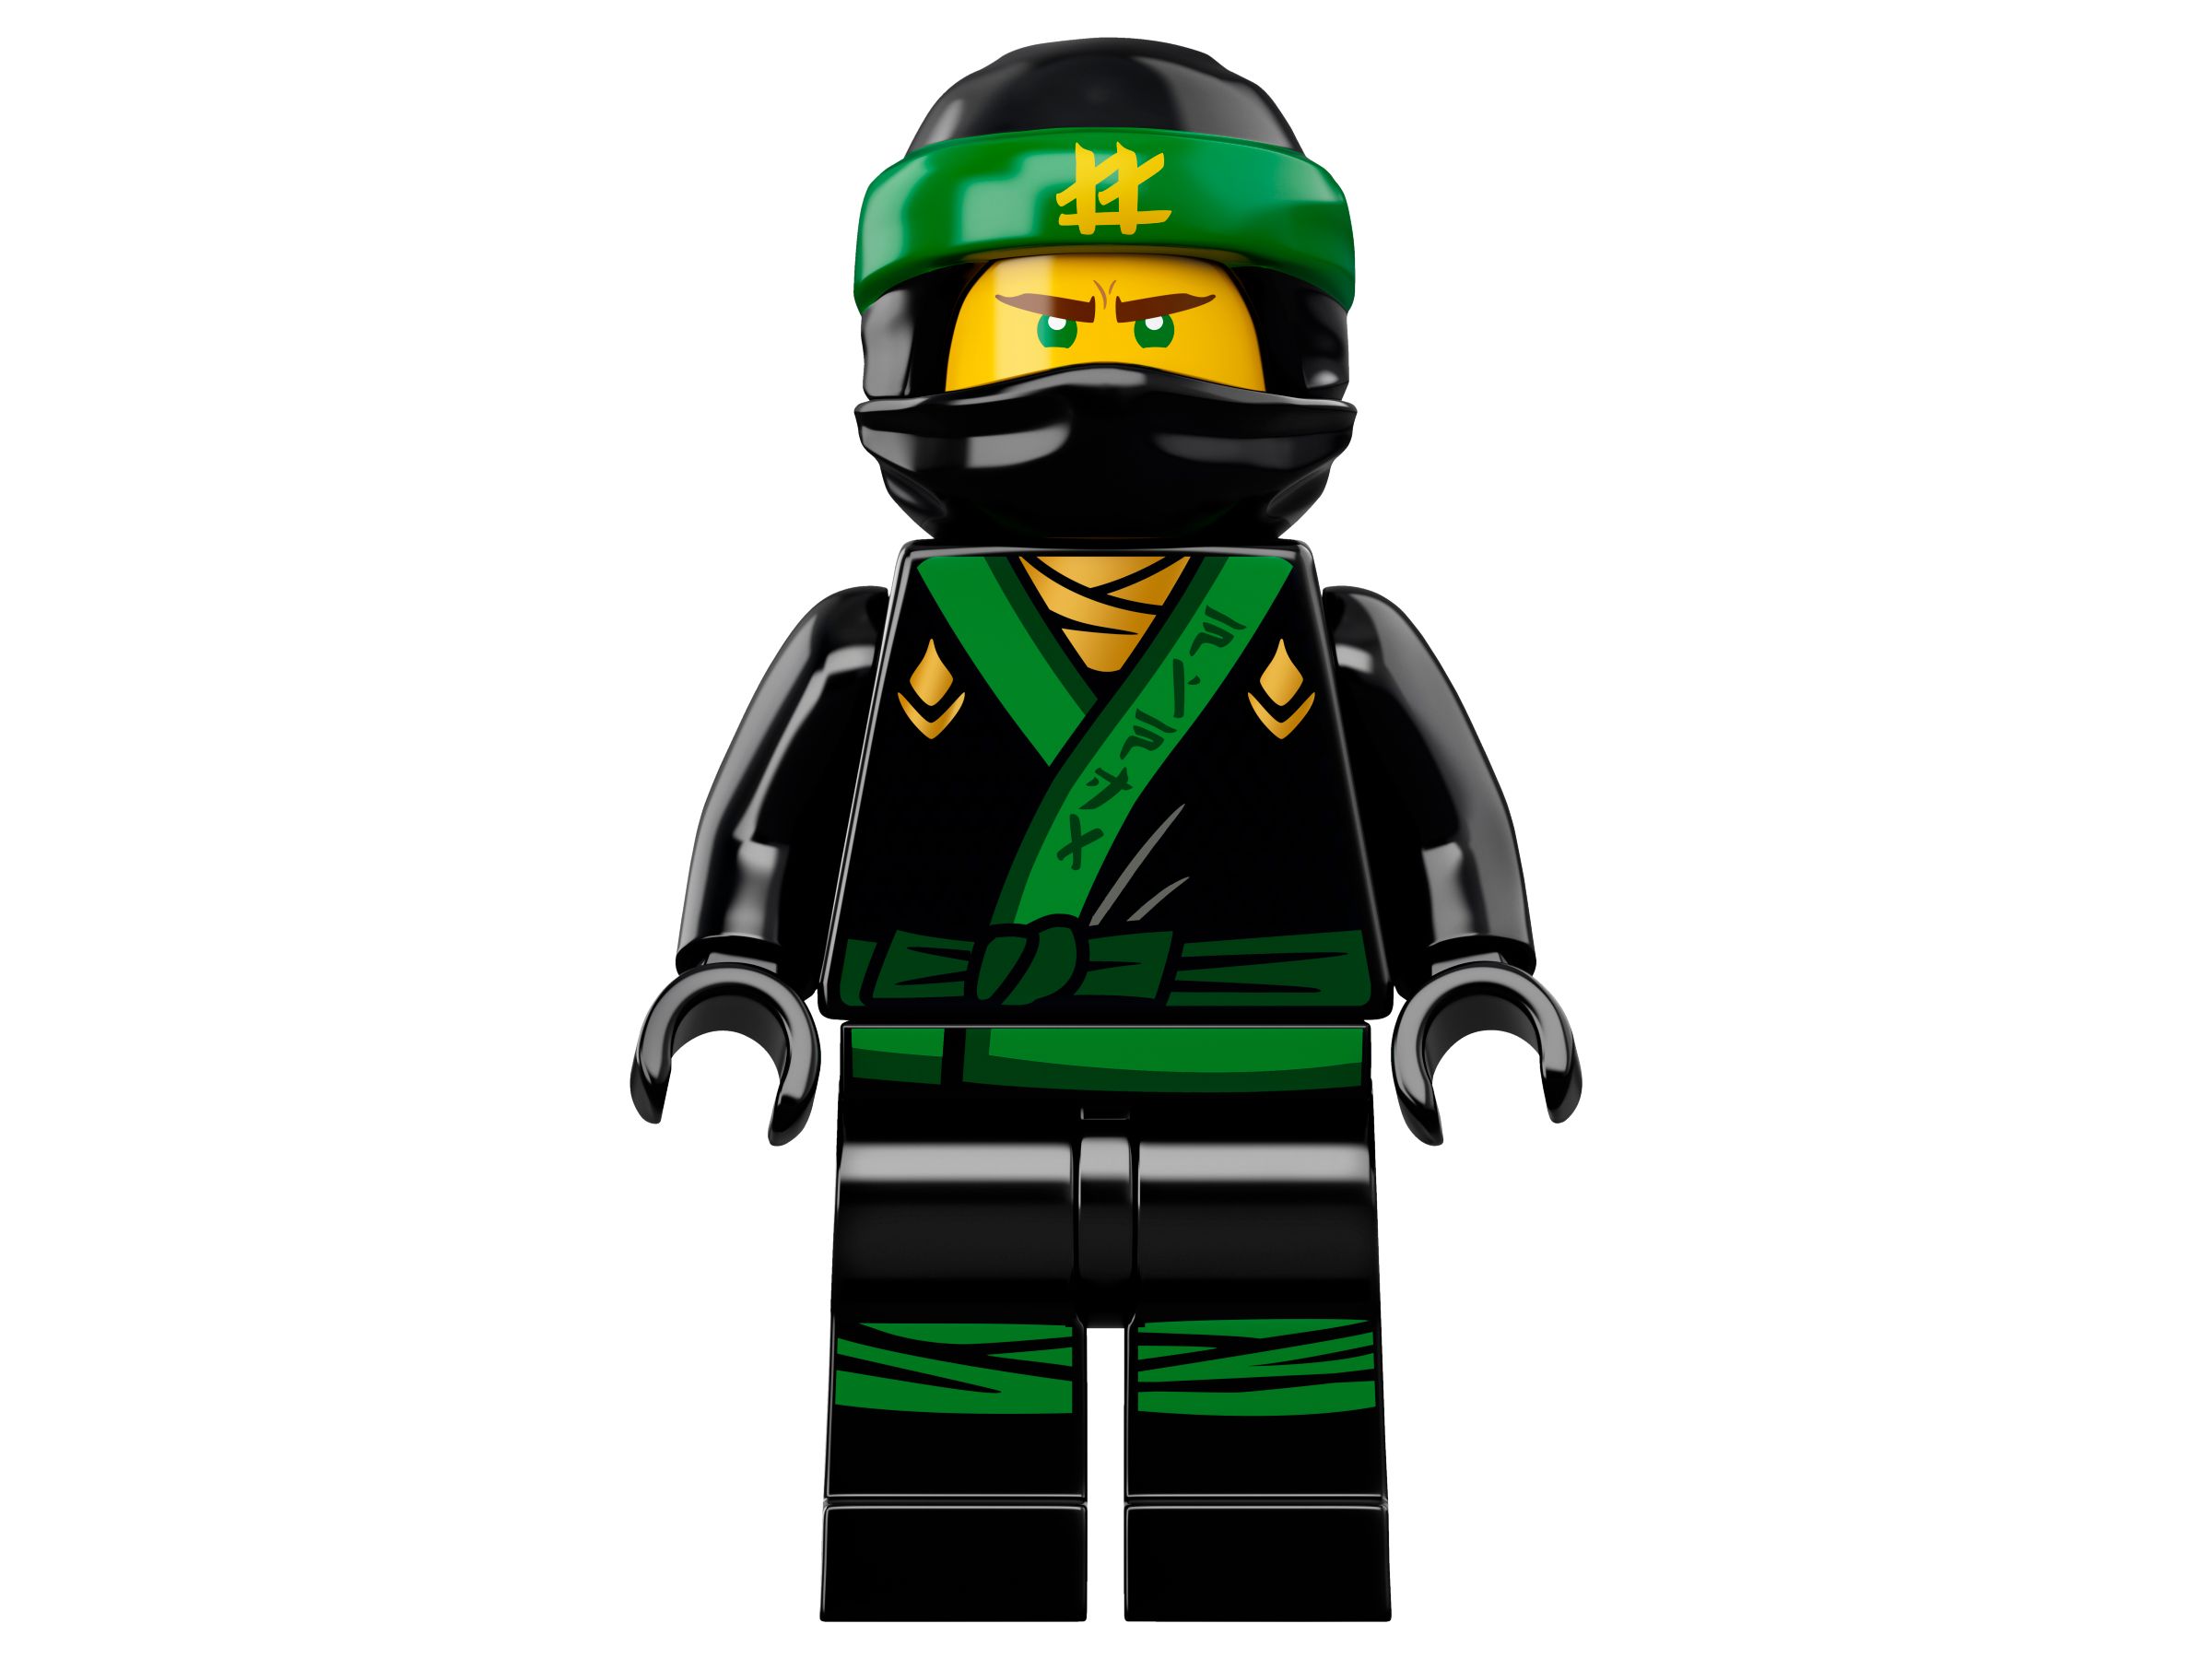 LEGO The LEGO Ninjago Movie 70628 Spinjitzu-Meister Lloyd LEGO_70628_alt6.jpg